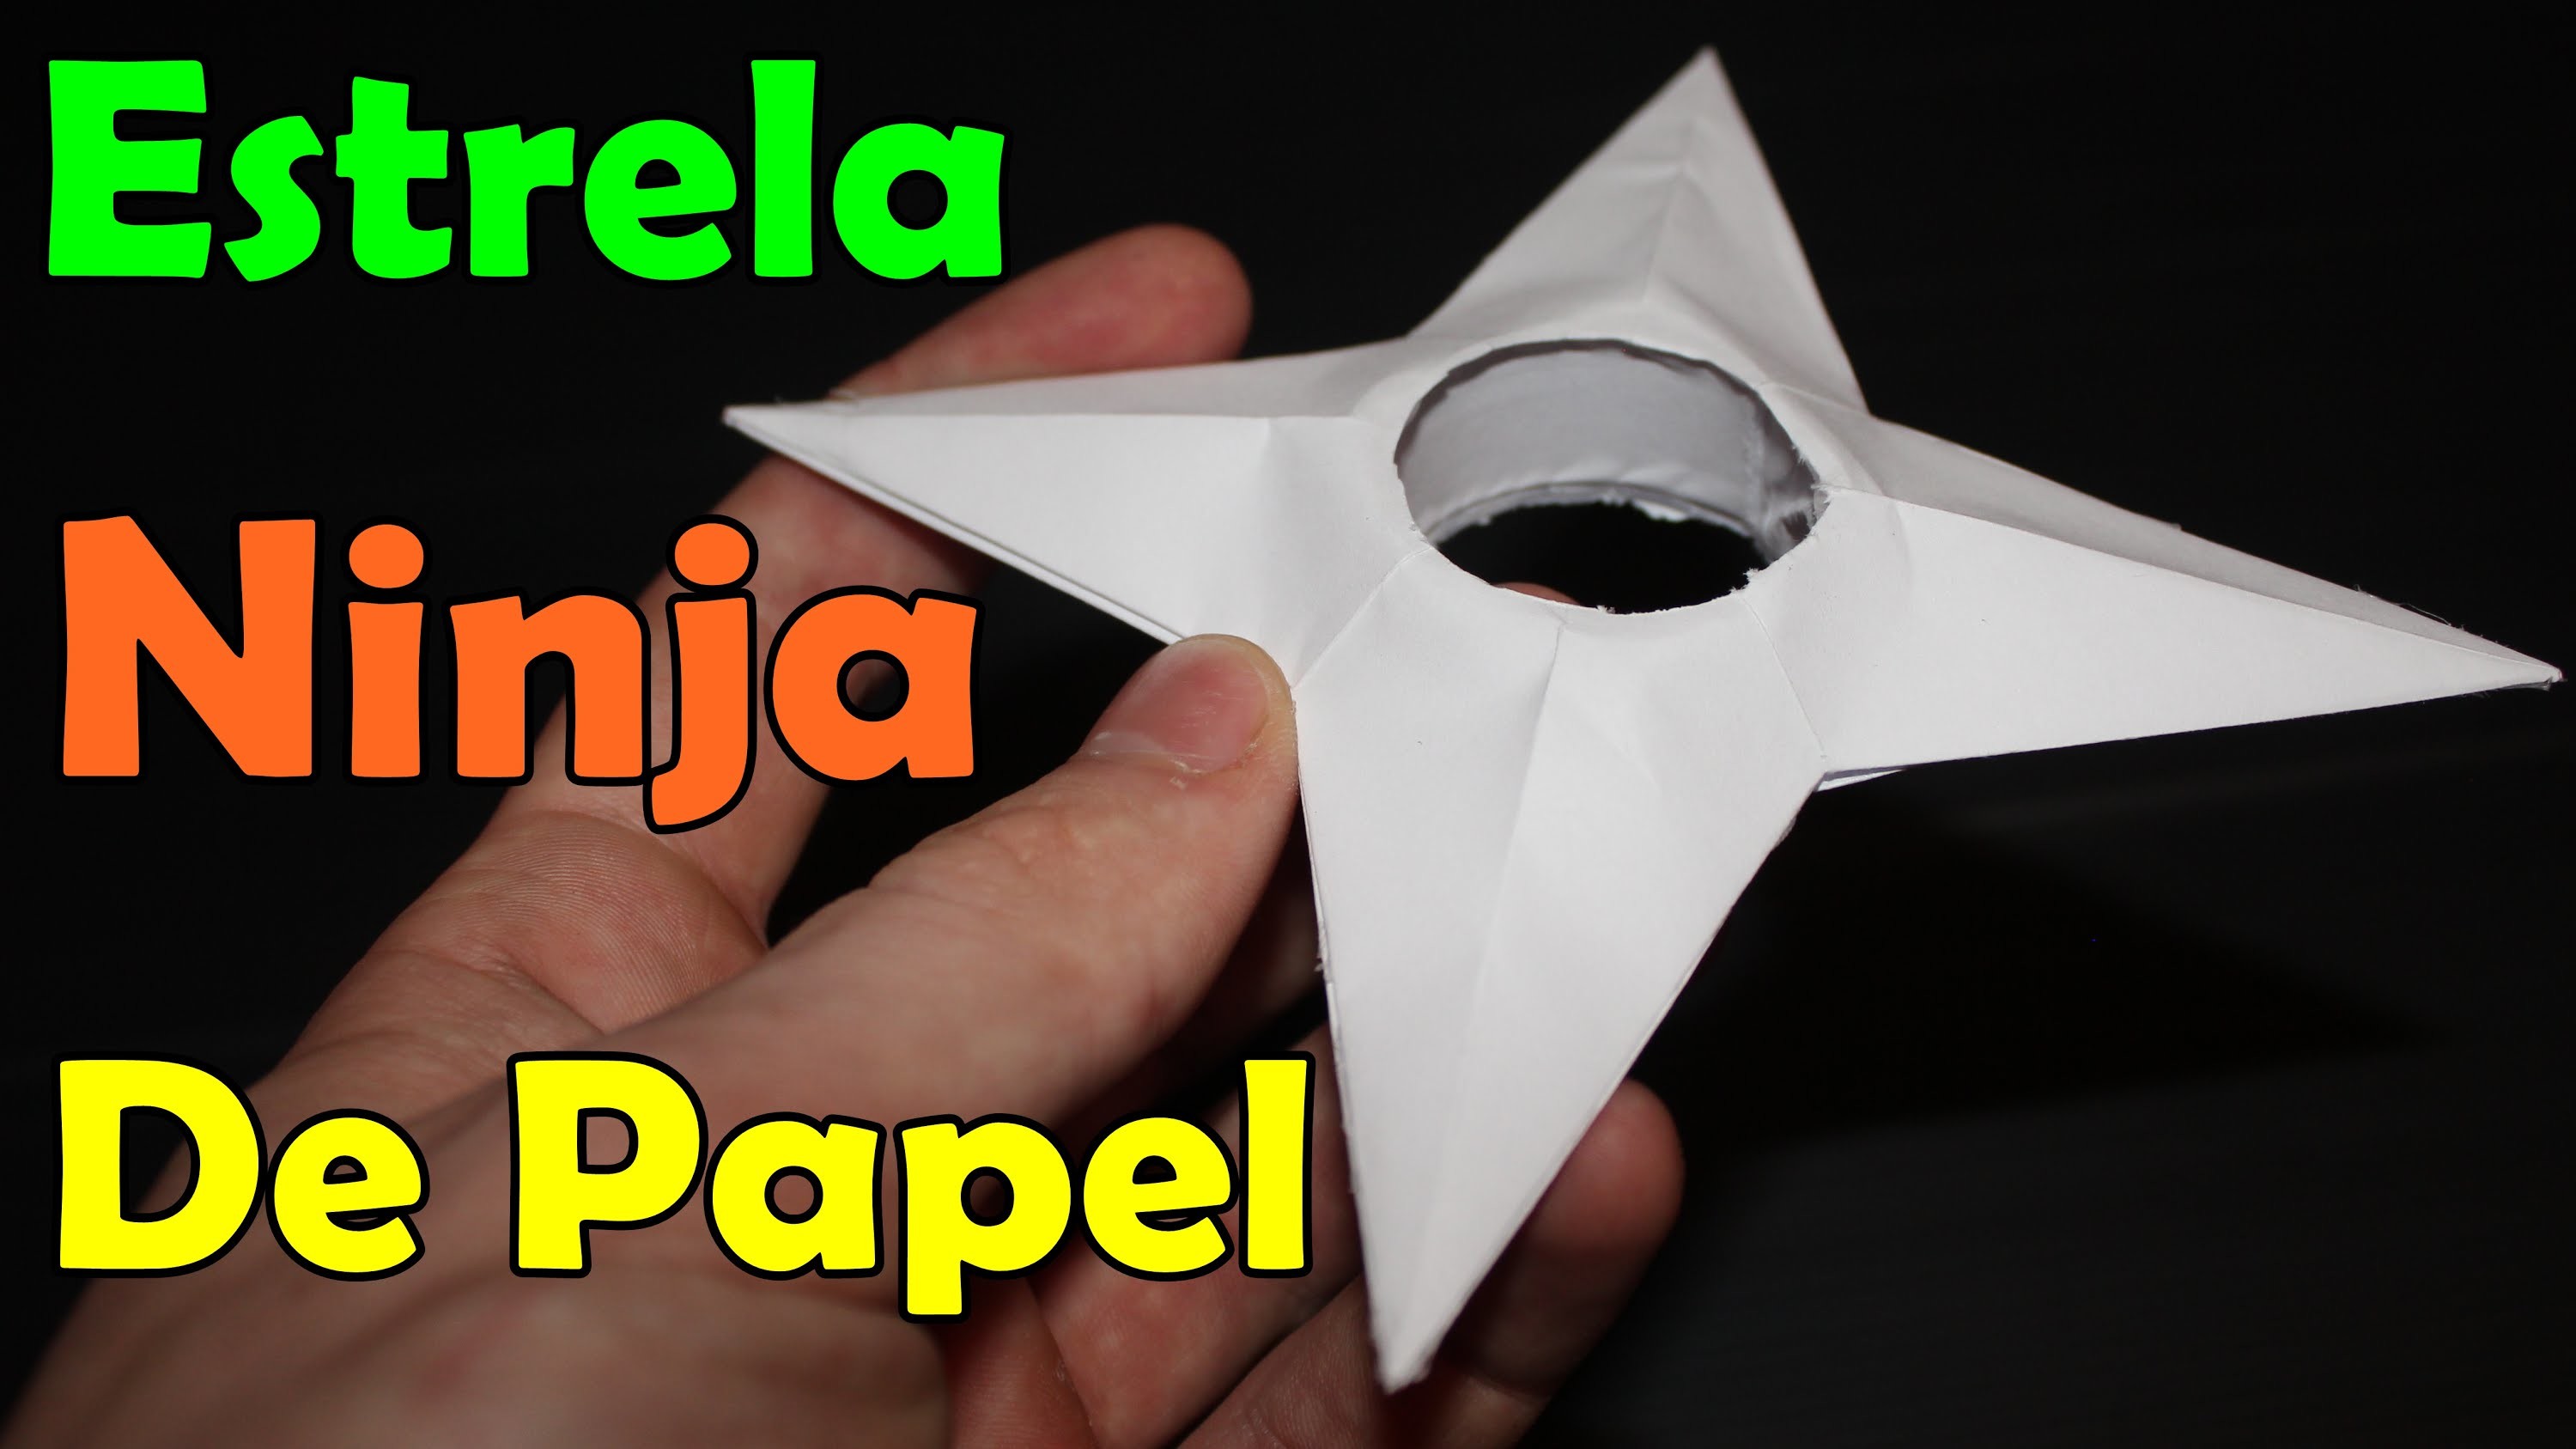 Estrela ninja de papel - (Shuriken do Naruto)